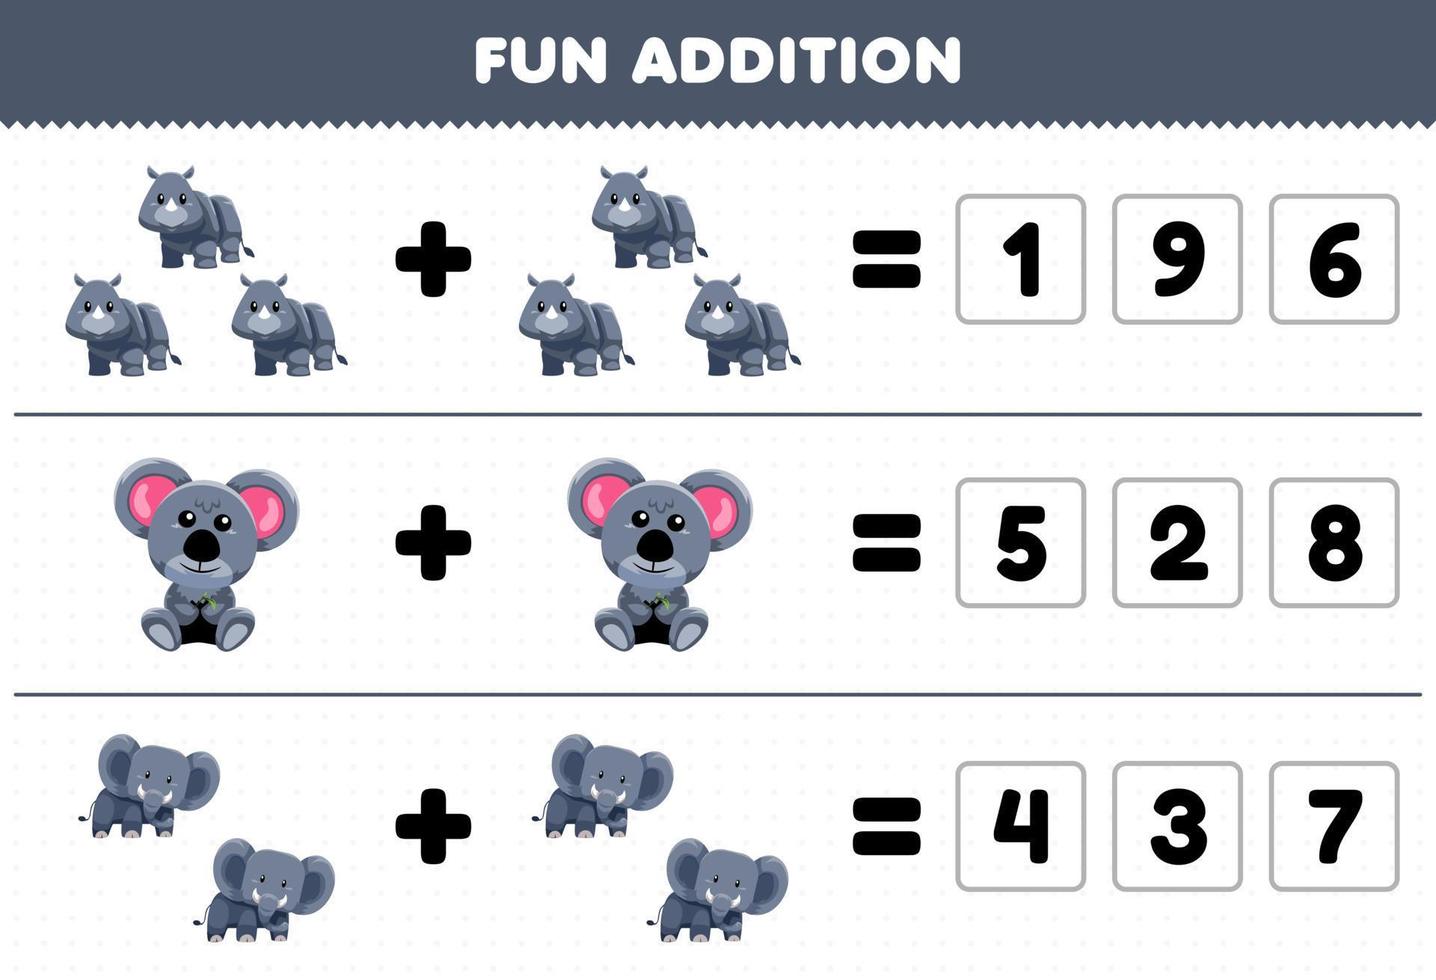 jeu éducatif pour les enfants ajout amusant en devinant le nombre correct de dessin animé mignon rhinocéros koala éléphant feuille de travail imprimable sur les animaux vecteur